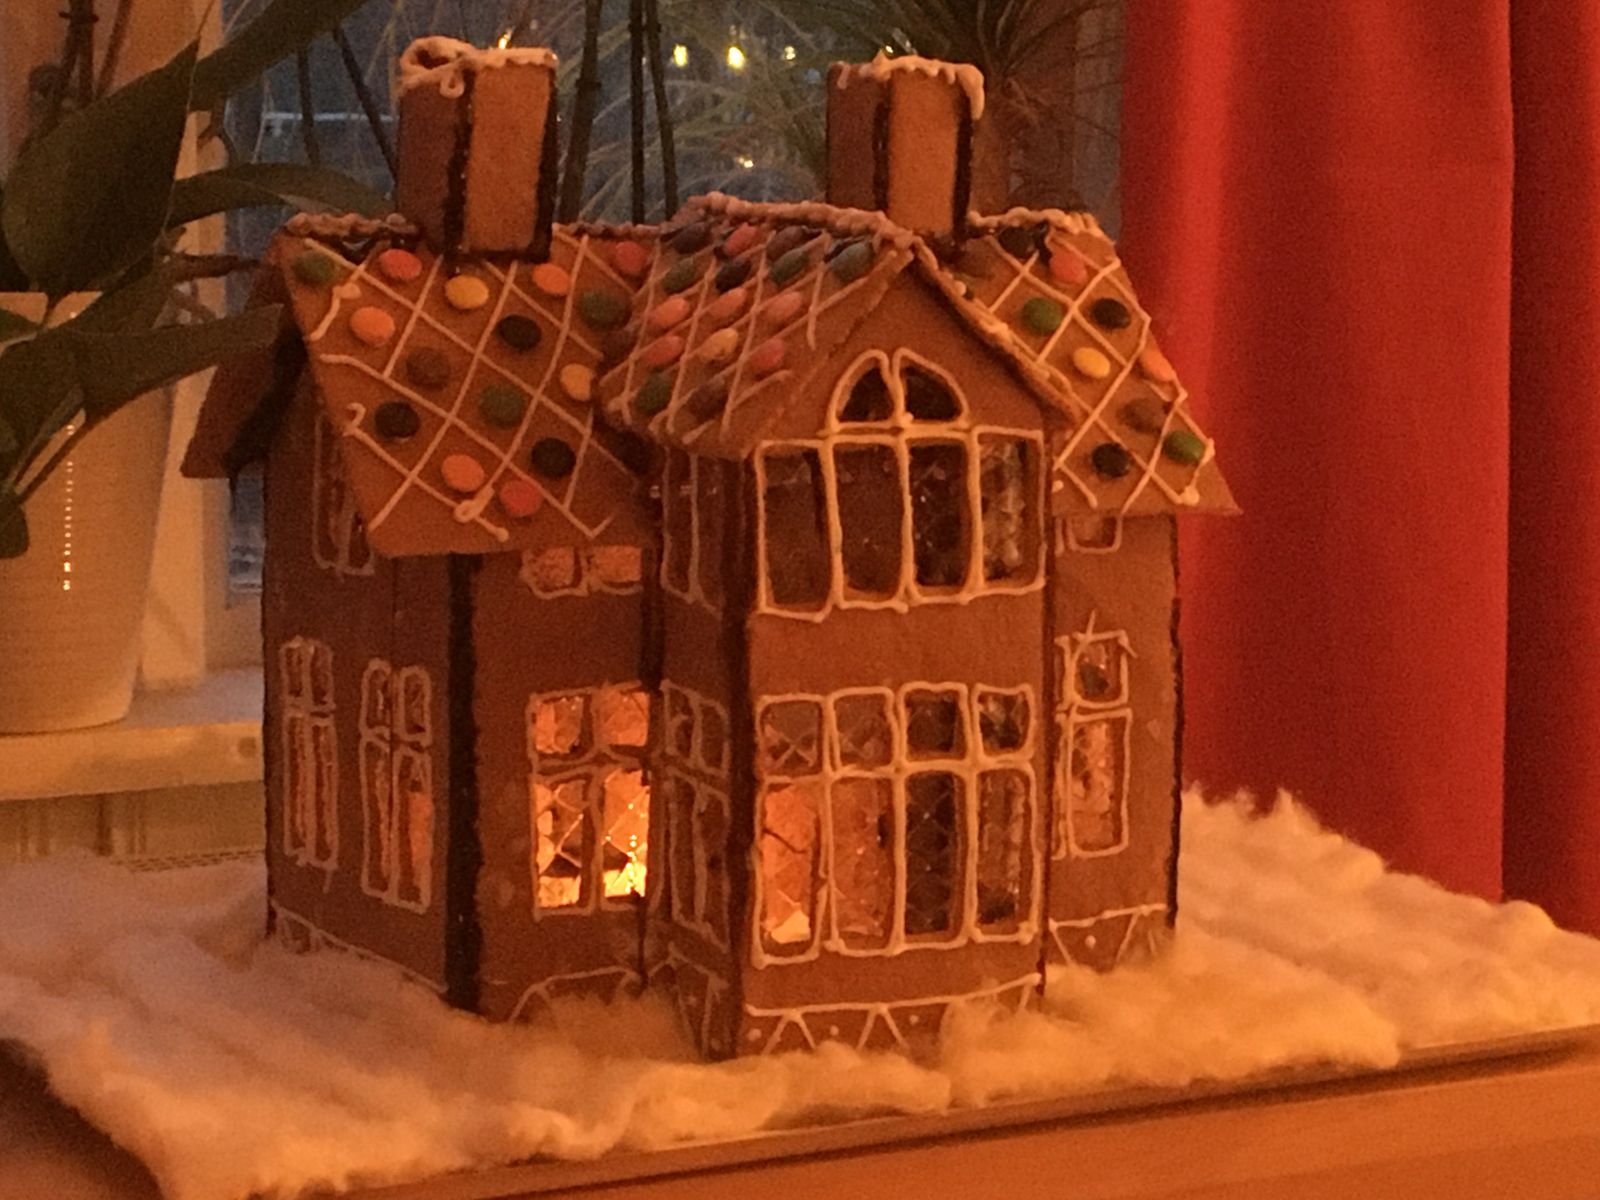 ”Nu tuffar vi emot jul och glädjen att få vara tillsammans”, skriver Ann-Louise från Färjestaden som byggt både ett pepparkakshus och ett pepparkakståg.